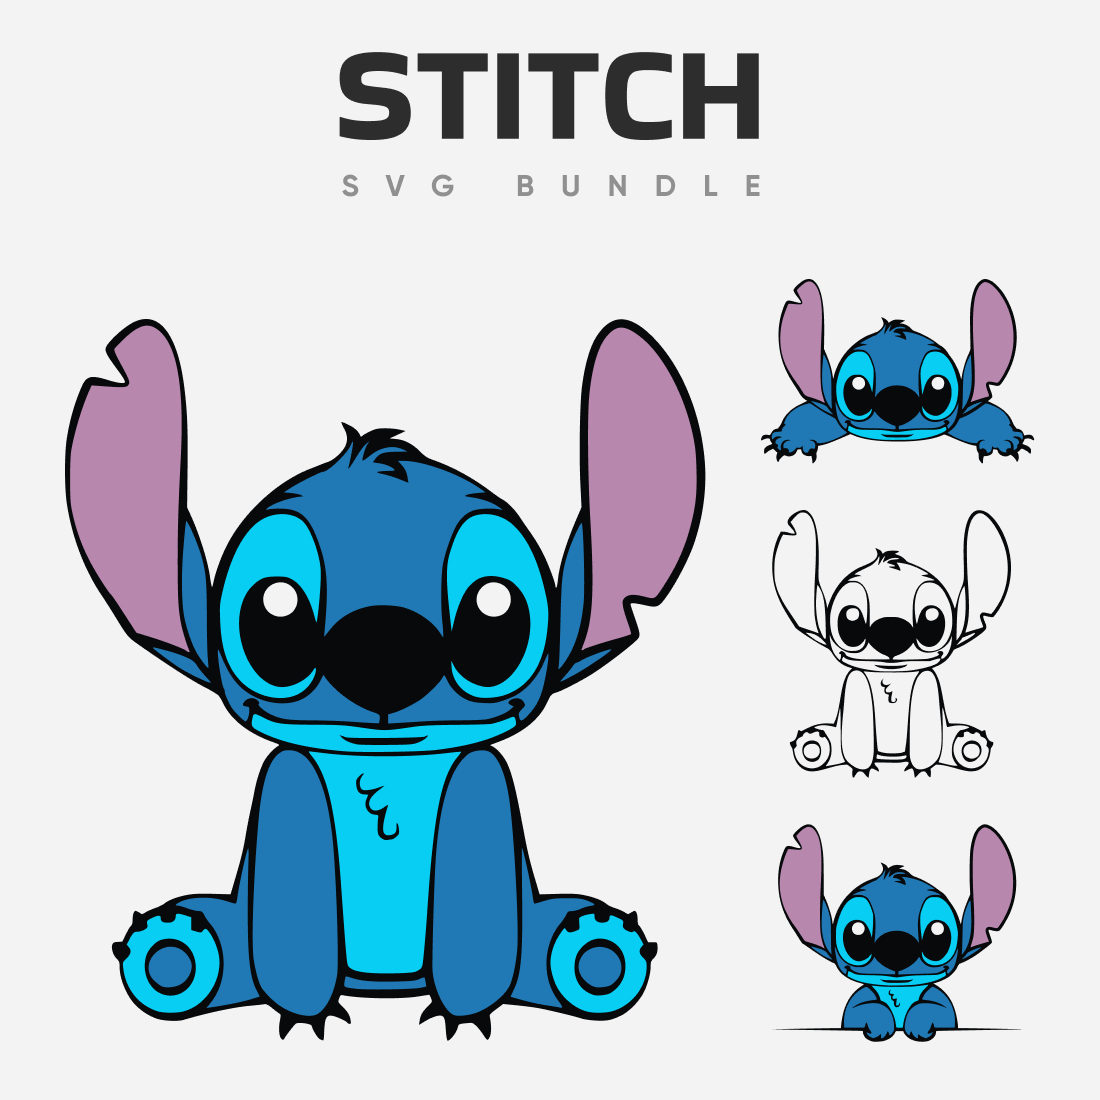 15+ Best Stitch SVG in 2021: Free and Premium - MasterBundles